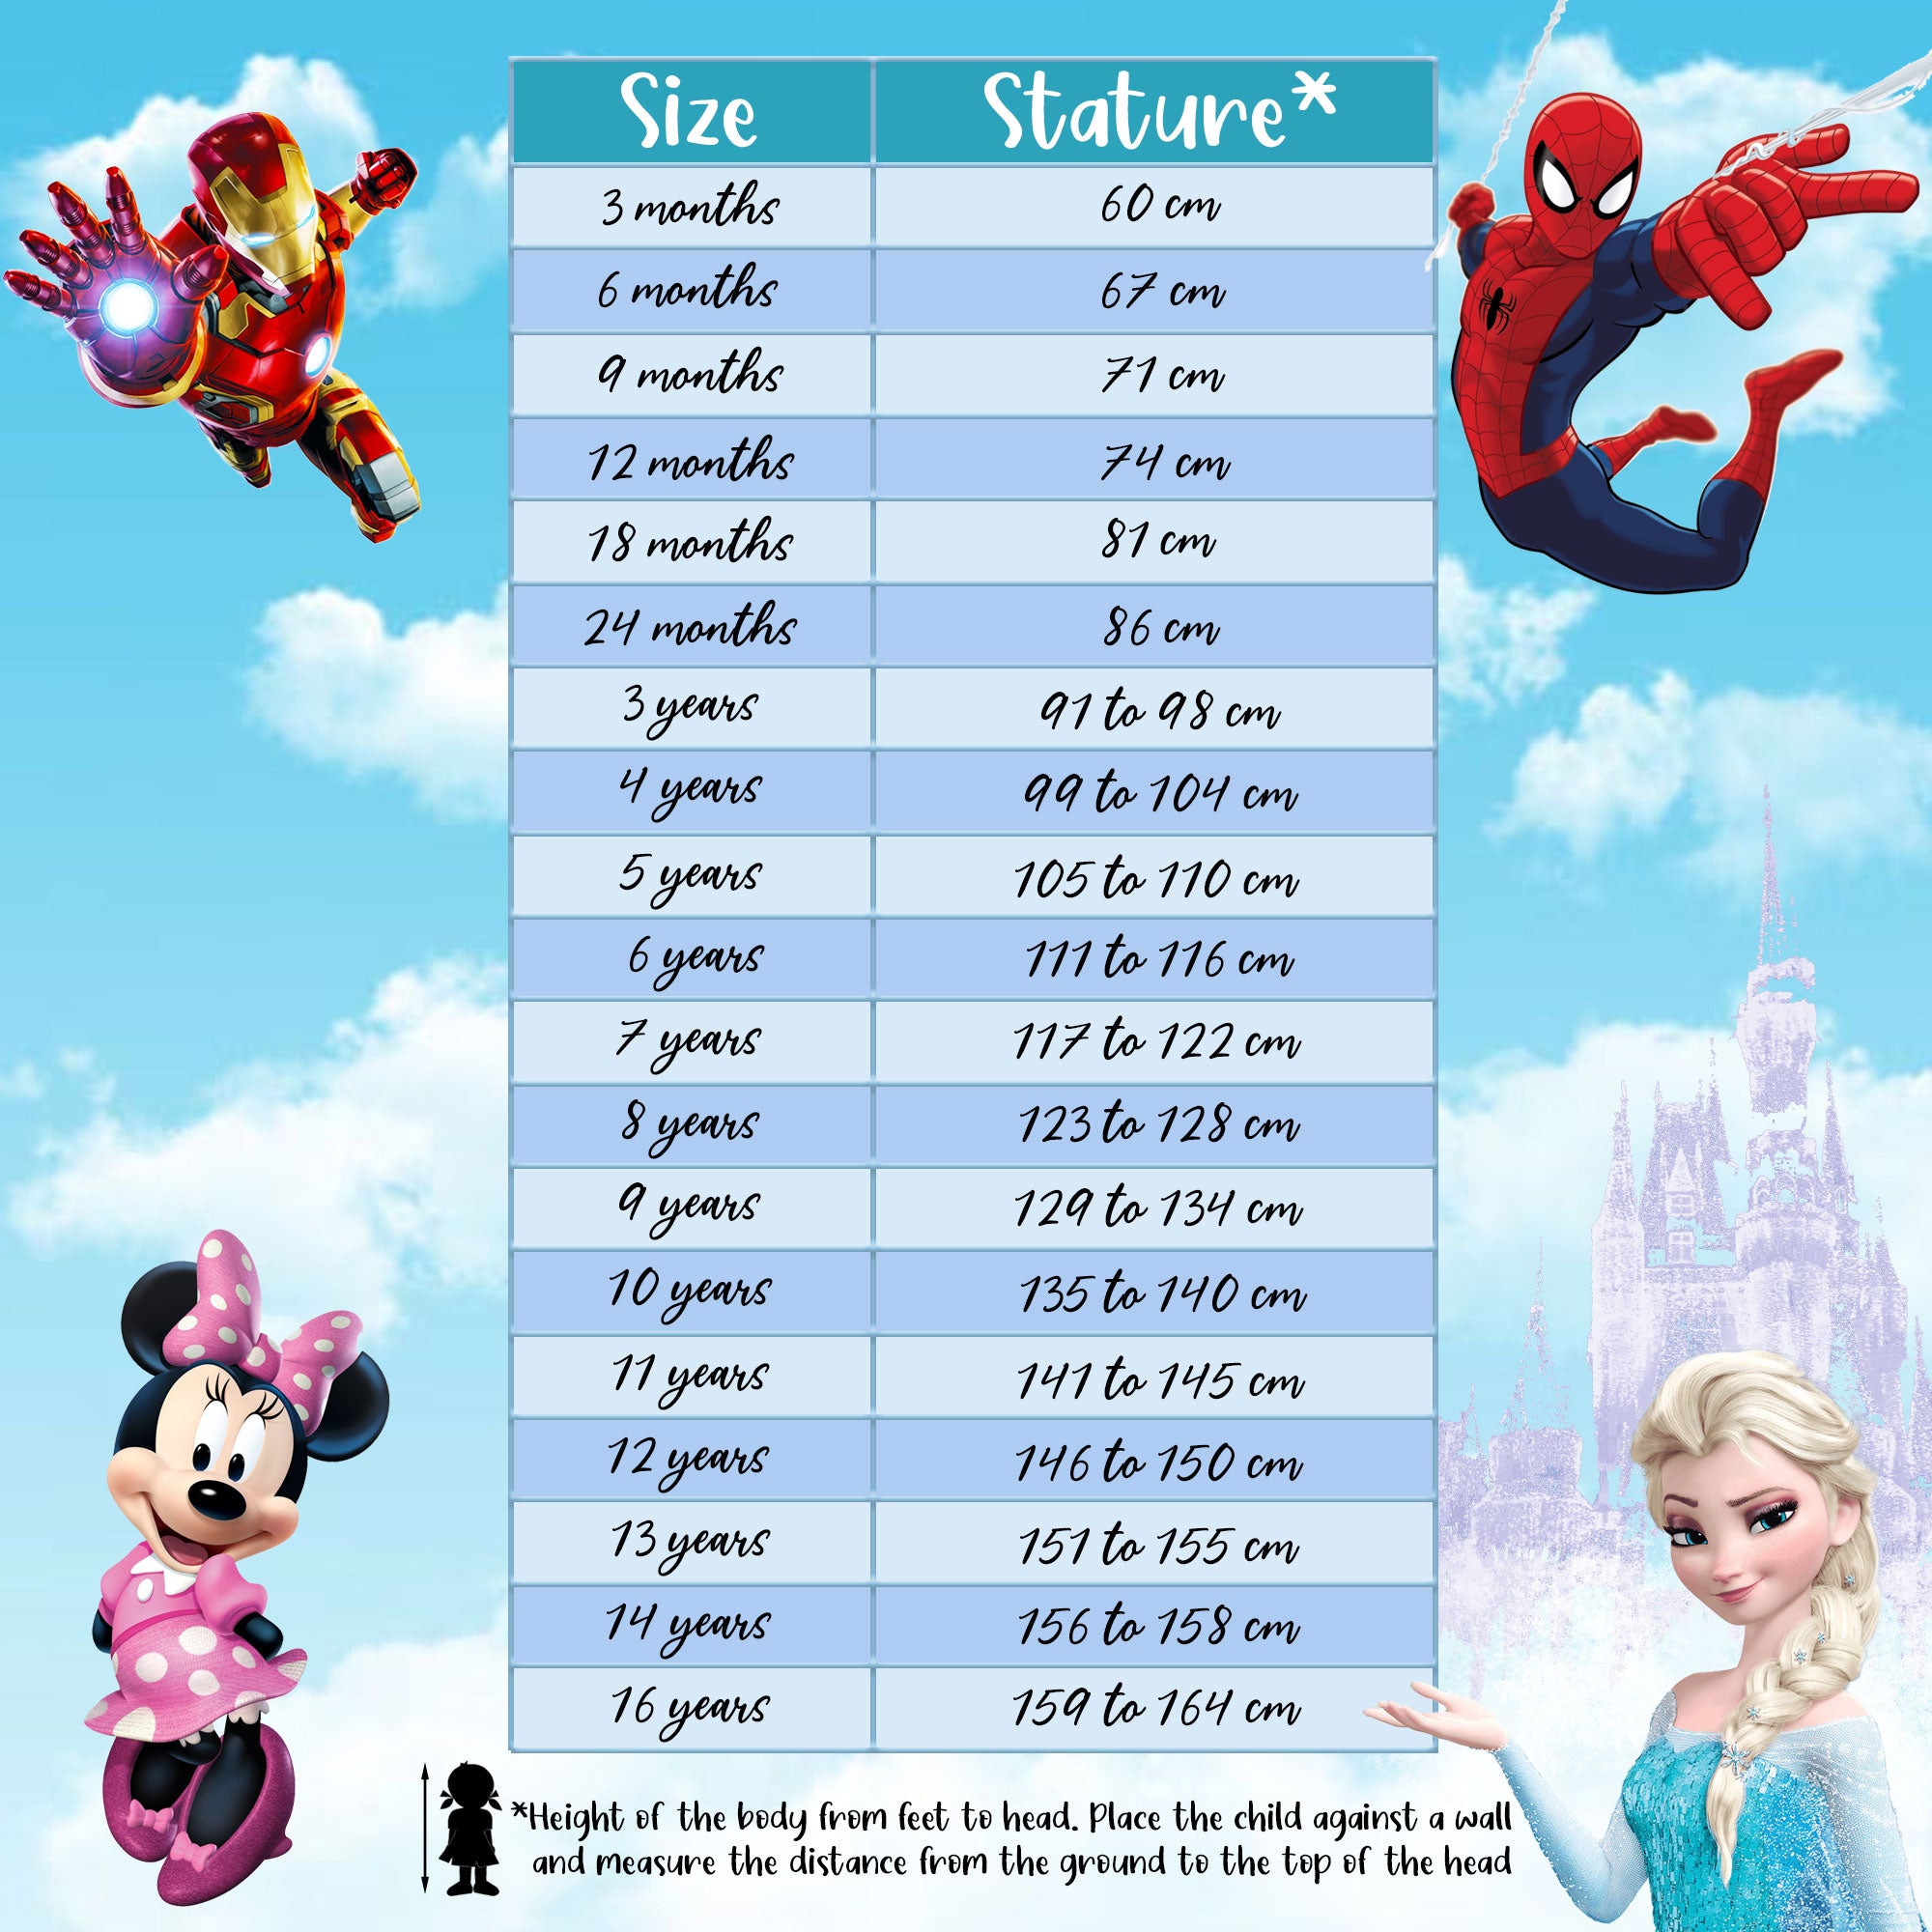 Costume da bagno Disney Minnie Mouse bikini mare per bambina 2 pezzi 6669